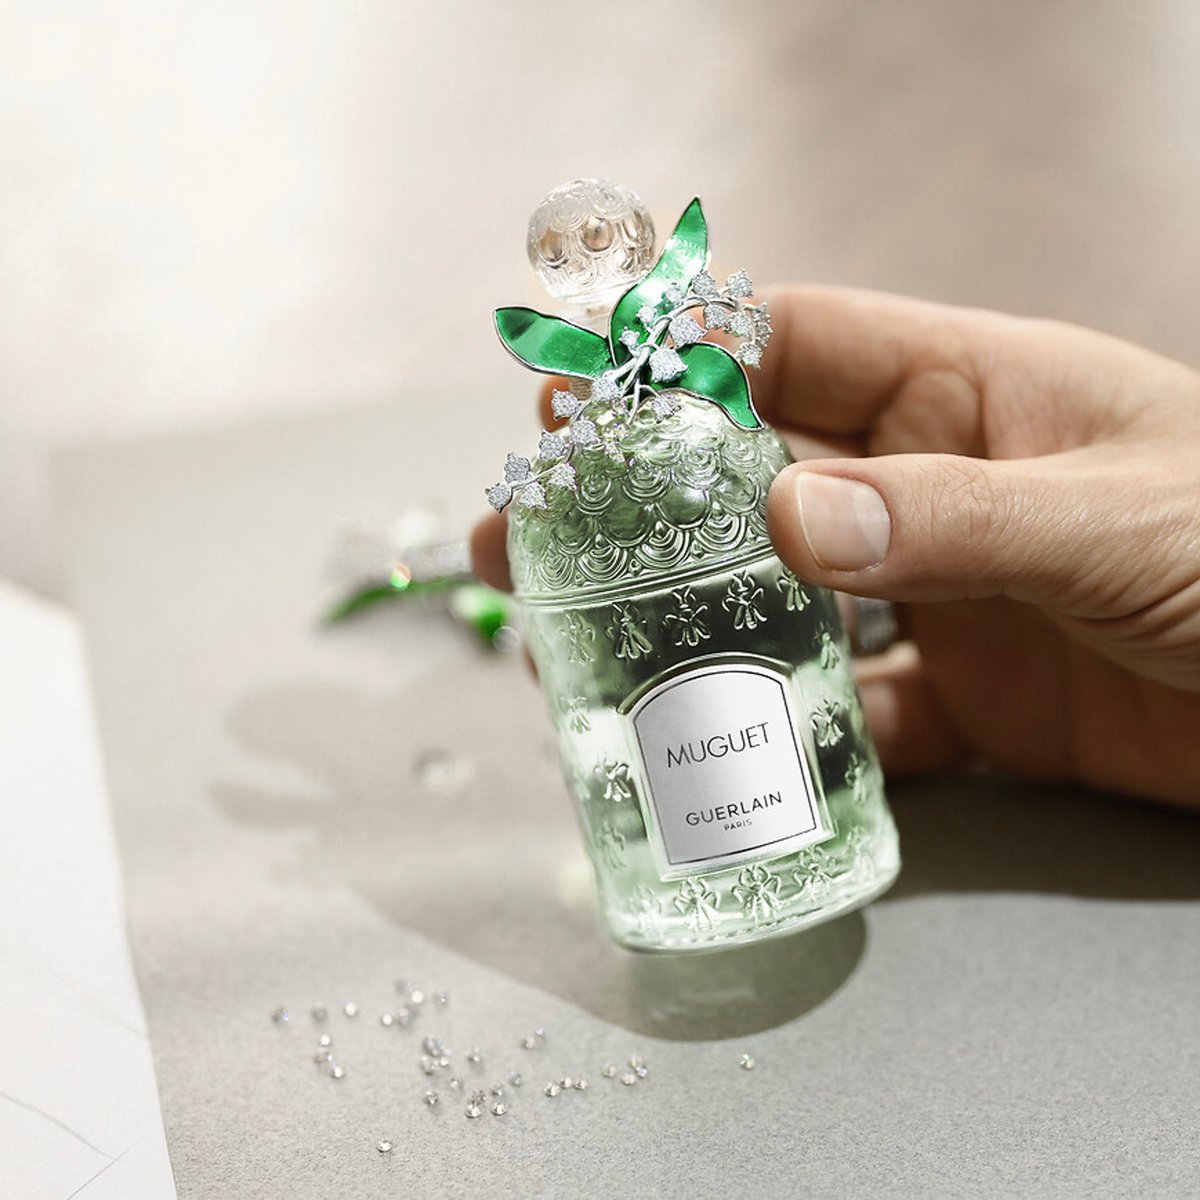 ゲランの毎年人気のスズランの香り「ミュゲ」 今年はジュエリーをデザインした限定ボトルで登場